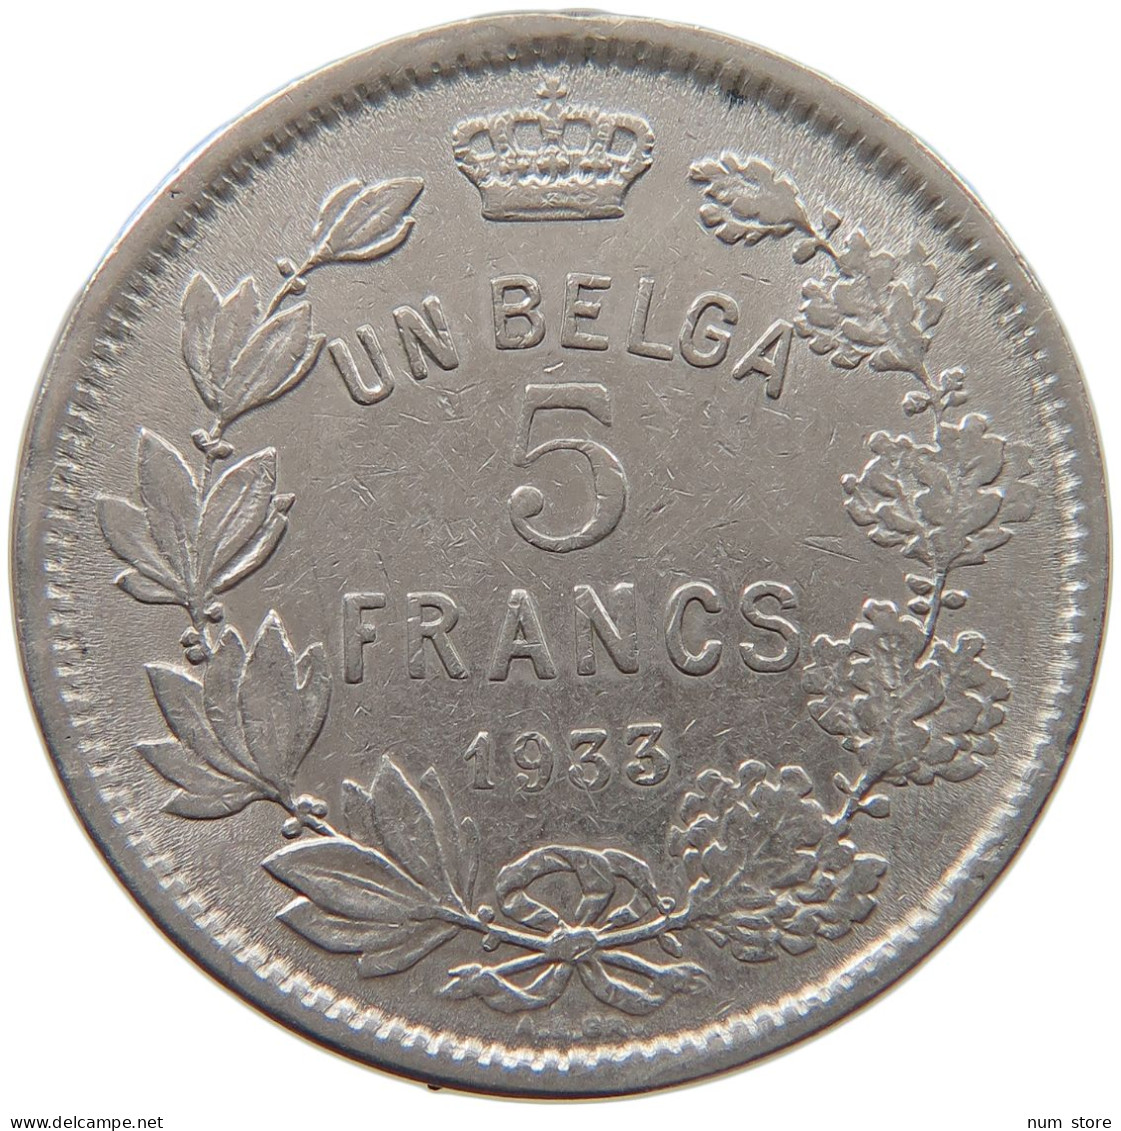 BELGIUM 5 FRANCS 1933 #c035 0185 - 5 Francs & 1 Belga